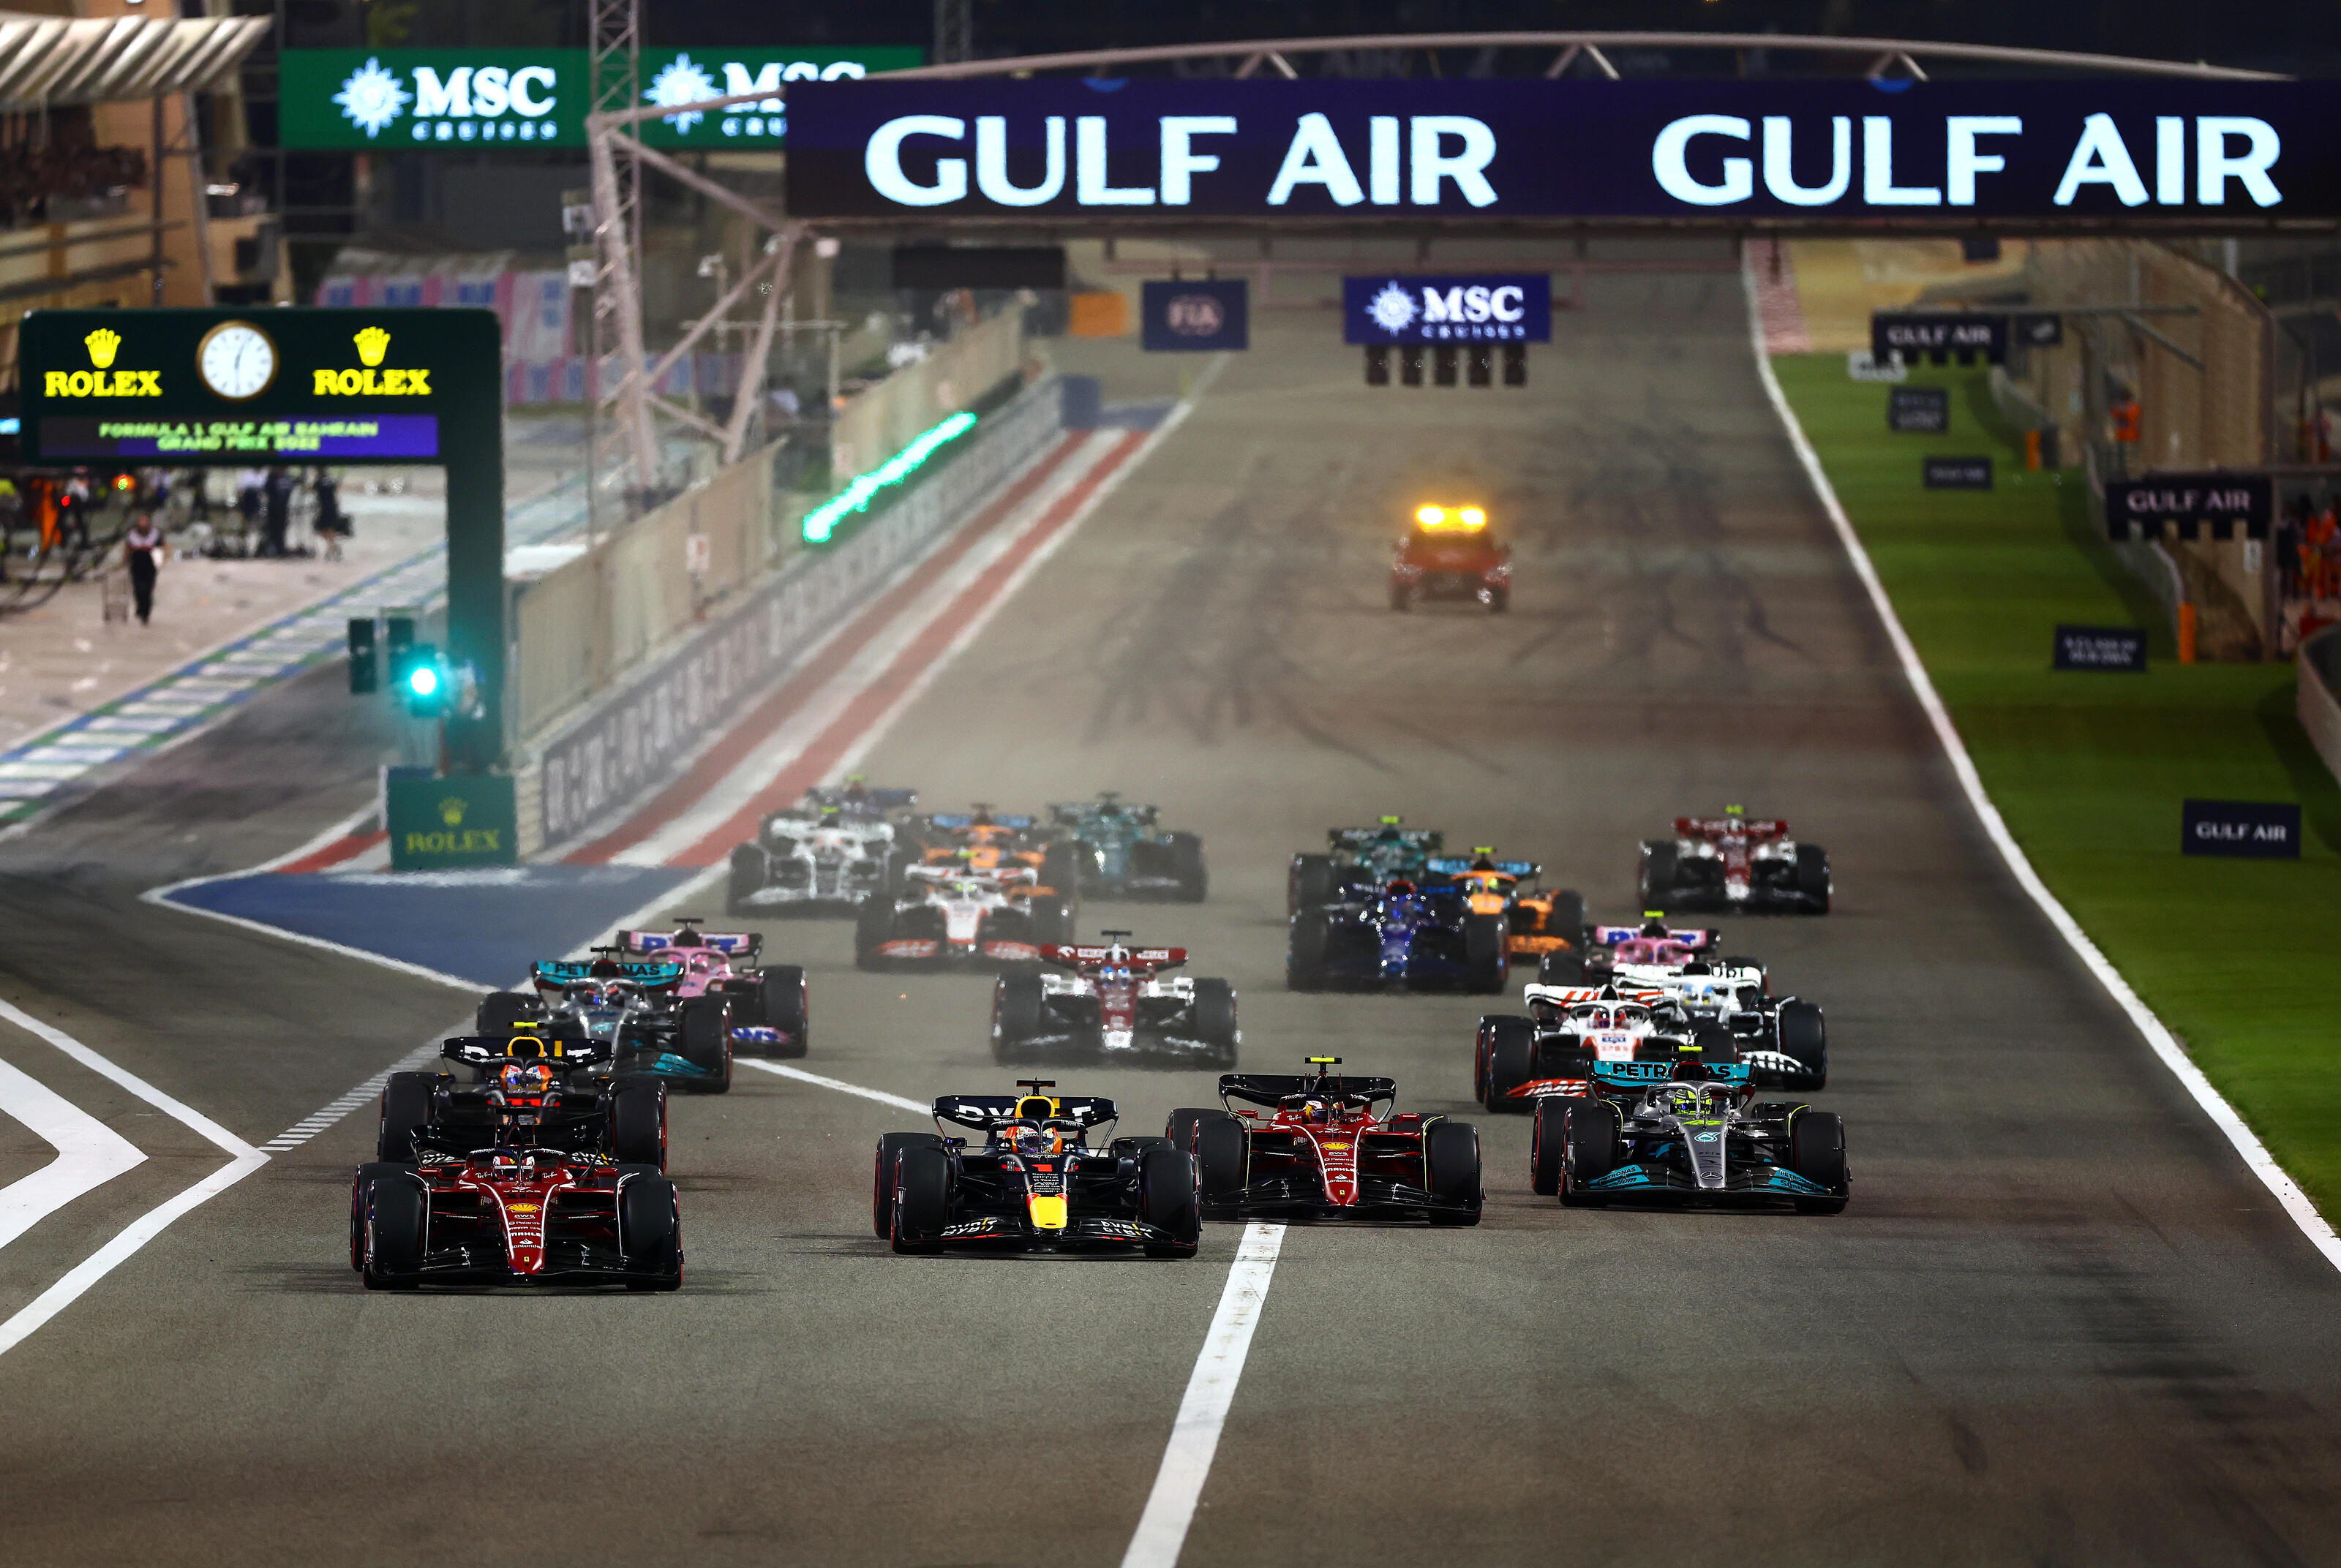 FIA официально утвердила календарь Формулы 1 на 2023 год | Autosport.com.ru